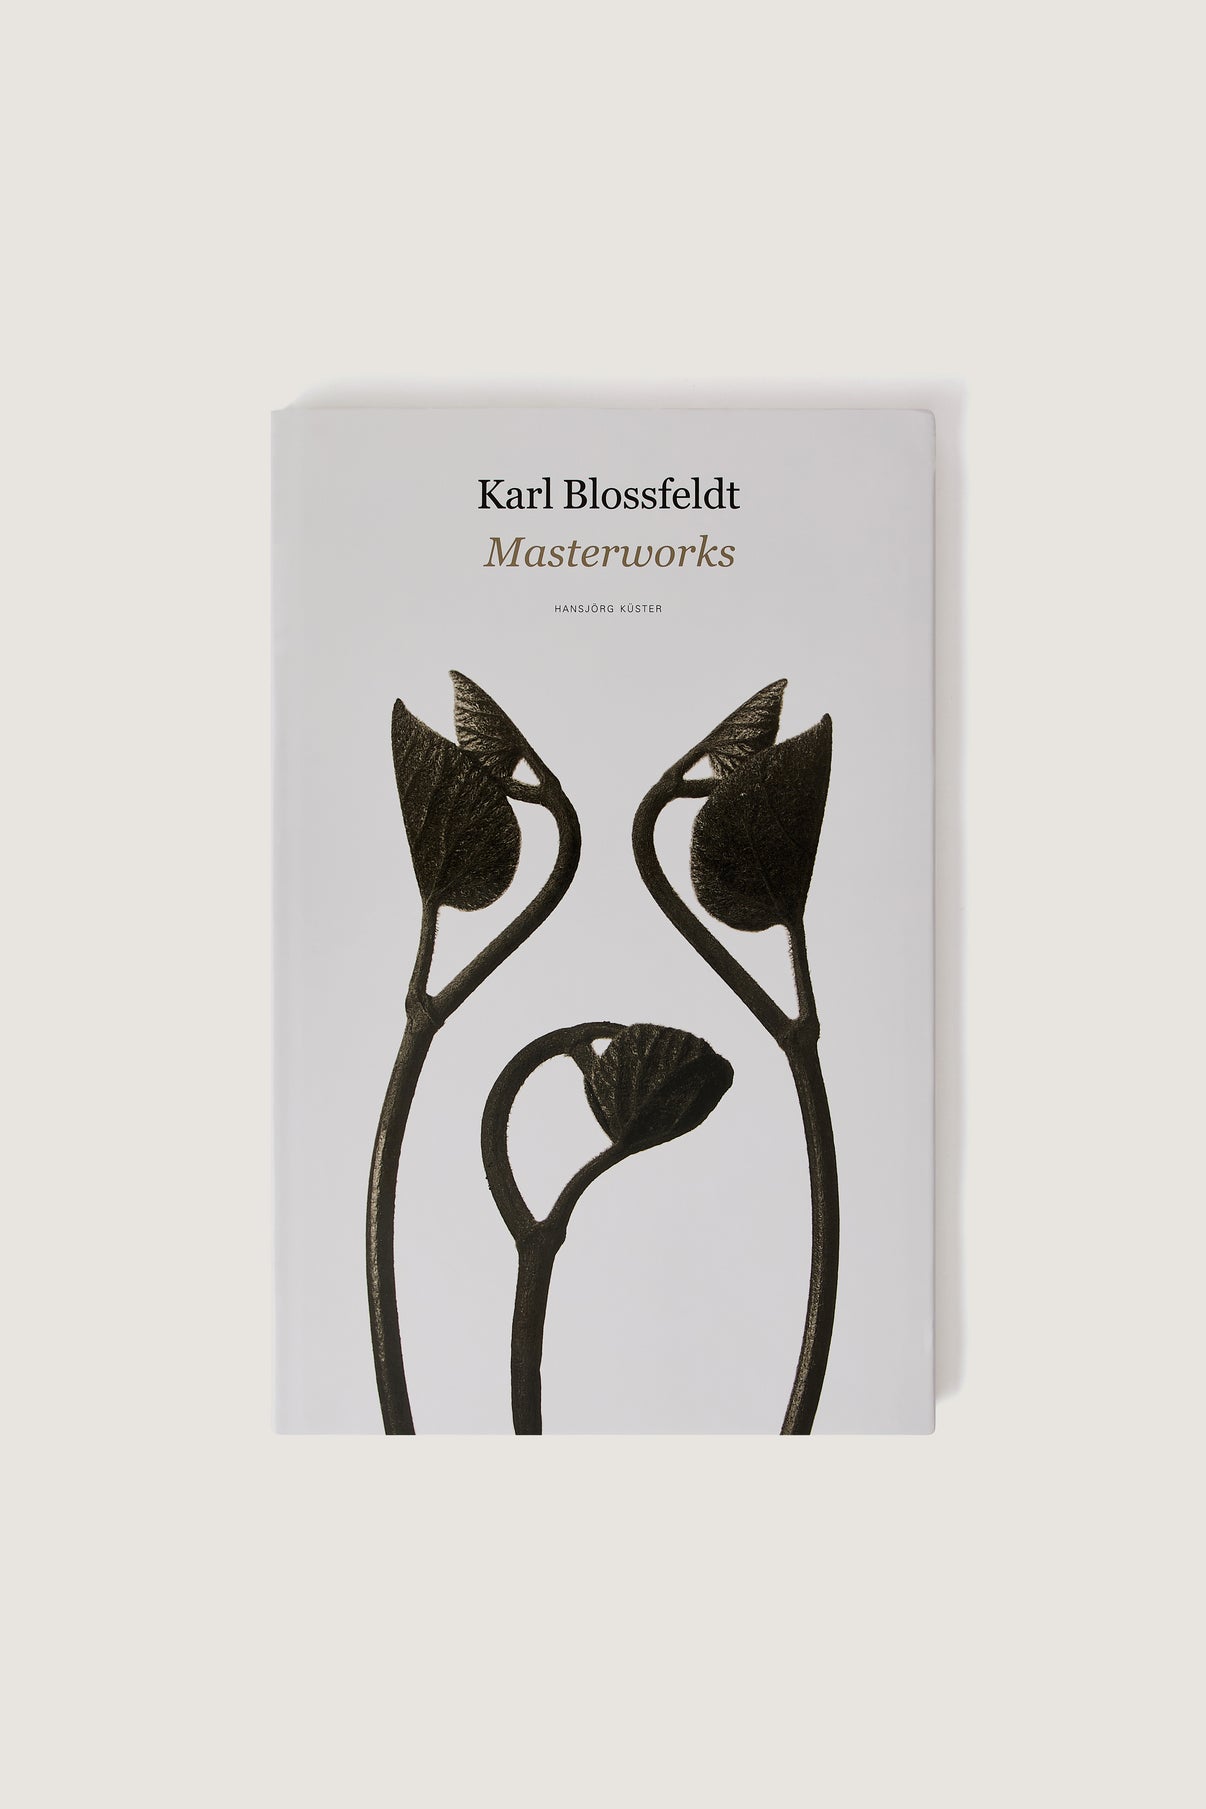 BOOK "KARL BLOSSFELDT : MASTERWORKS" vue 1